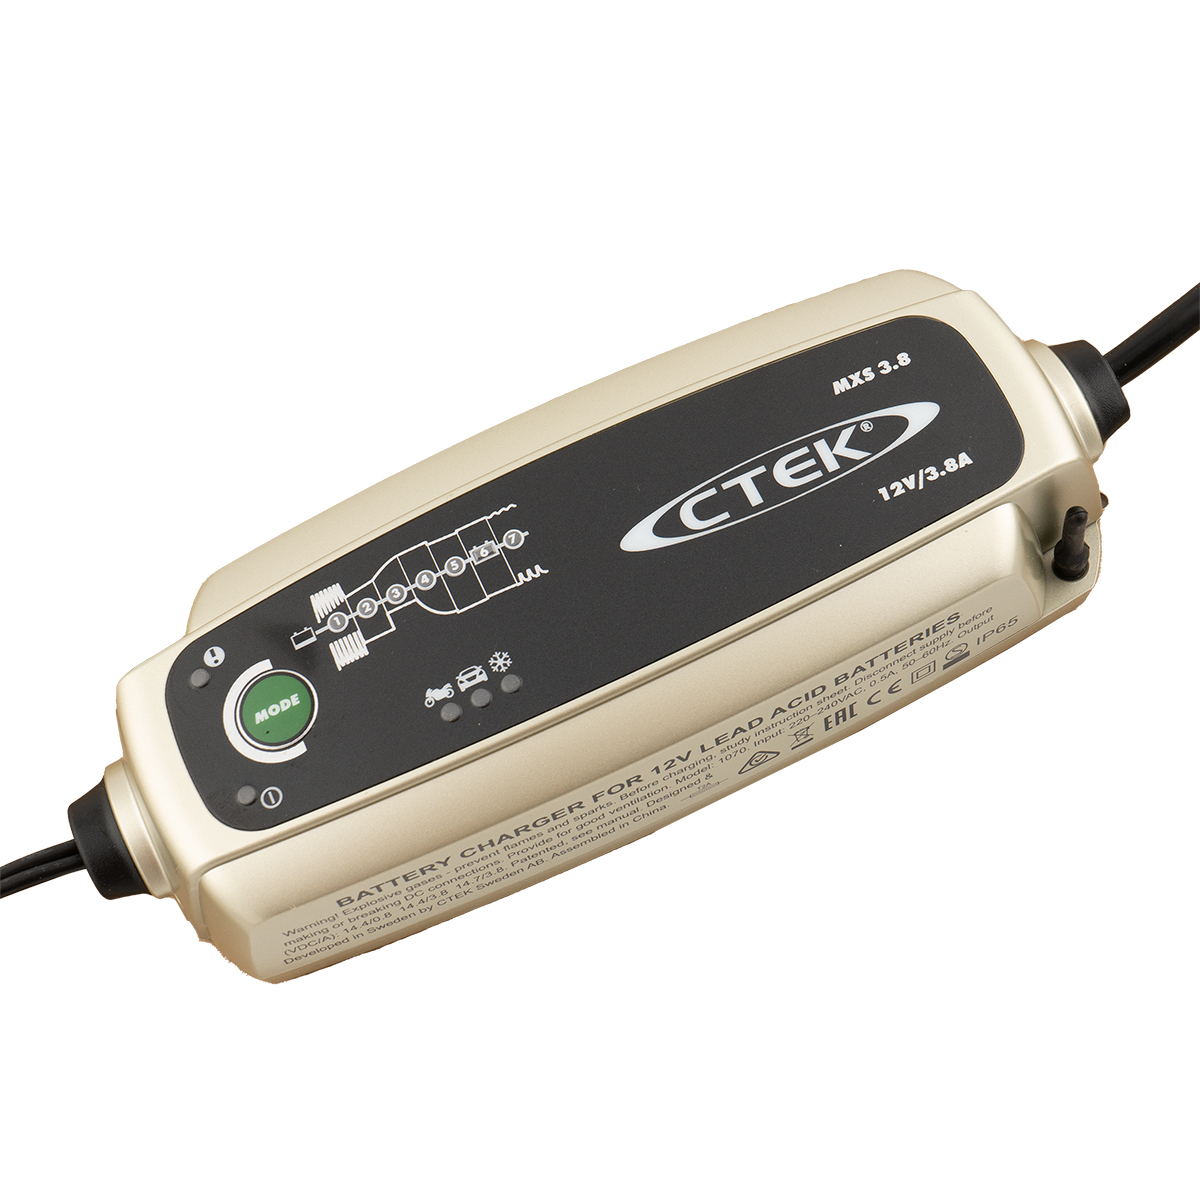 CTEK MXS 3.8 Batterie-Ladegerät 12V 3,8A